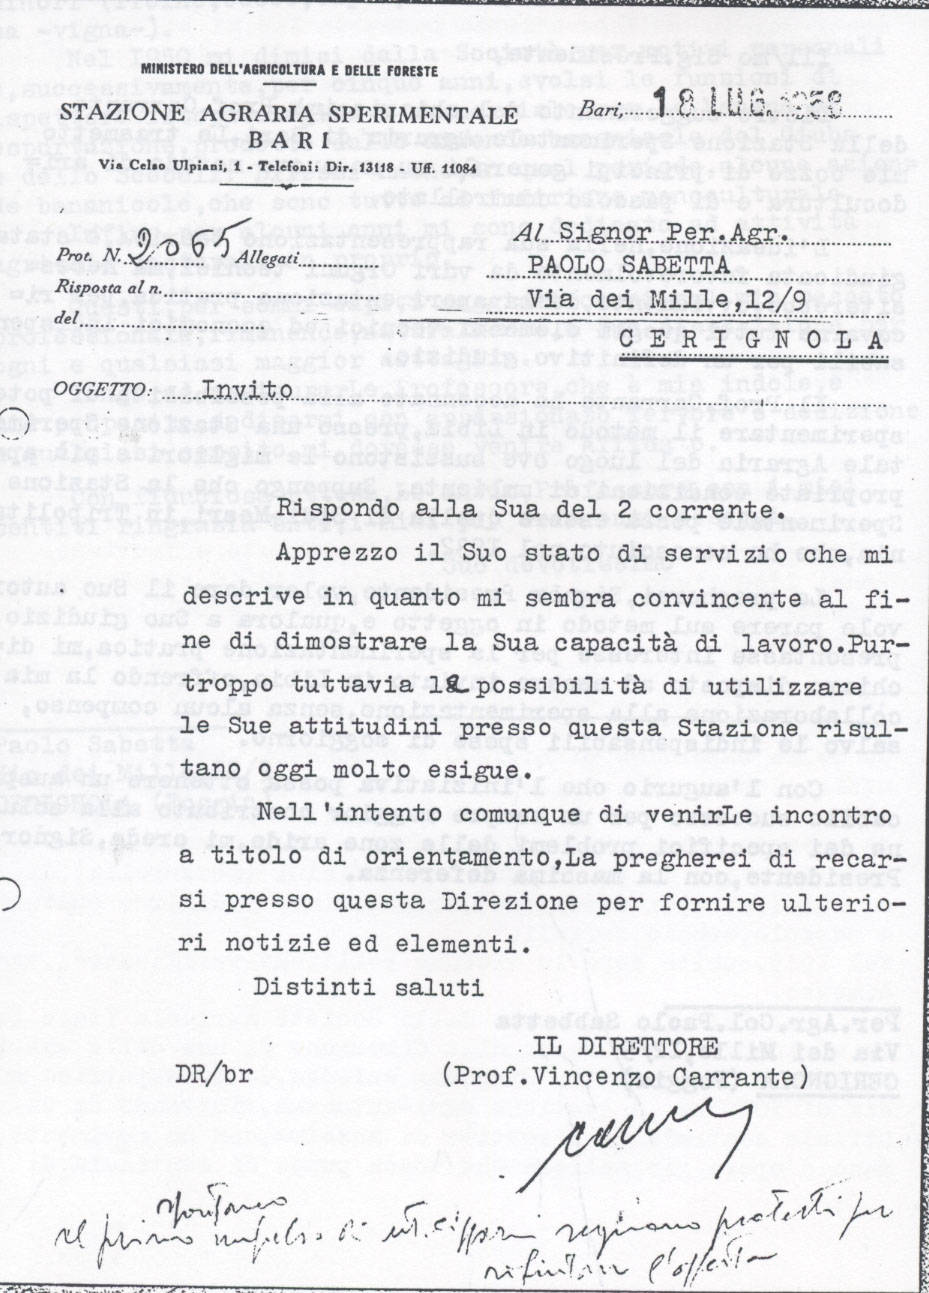 Lettera richiesta dati Sabbetta per assunzione presso la Stazione Agraria Sperimentale di Bari nella persona del dott. Carrante (9° Esilio in patria)